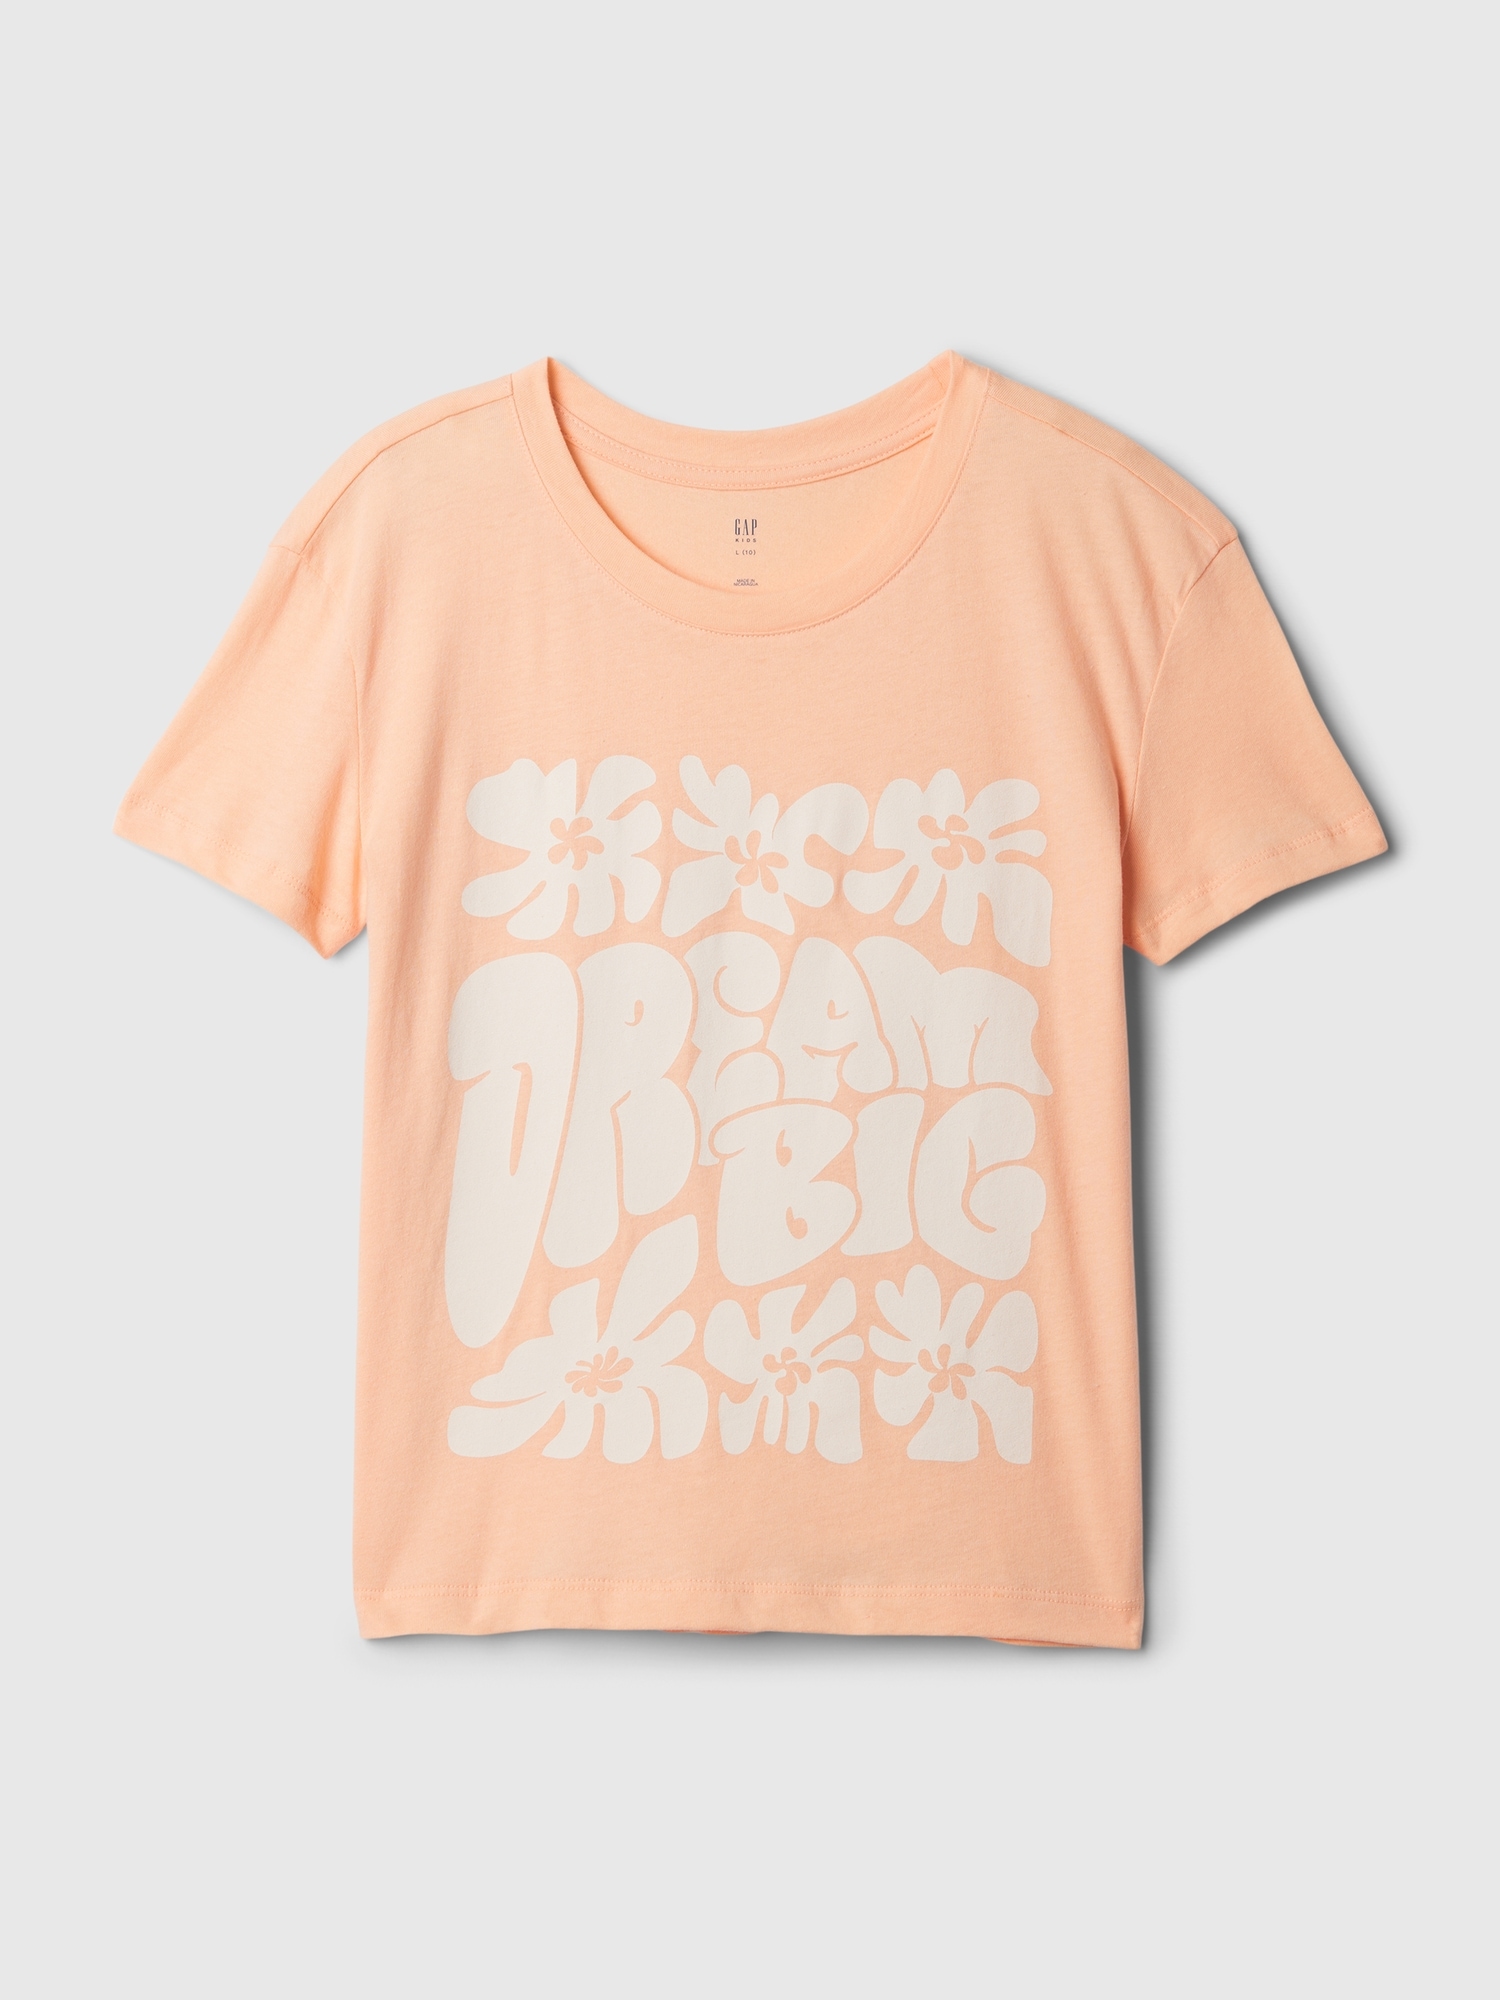 갭 Kids Graphic T-Shirt